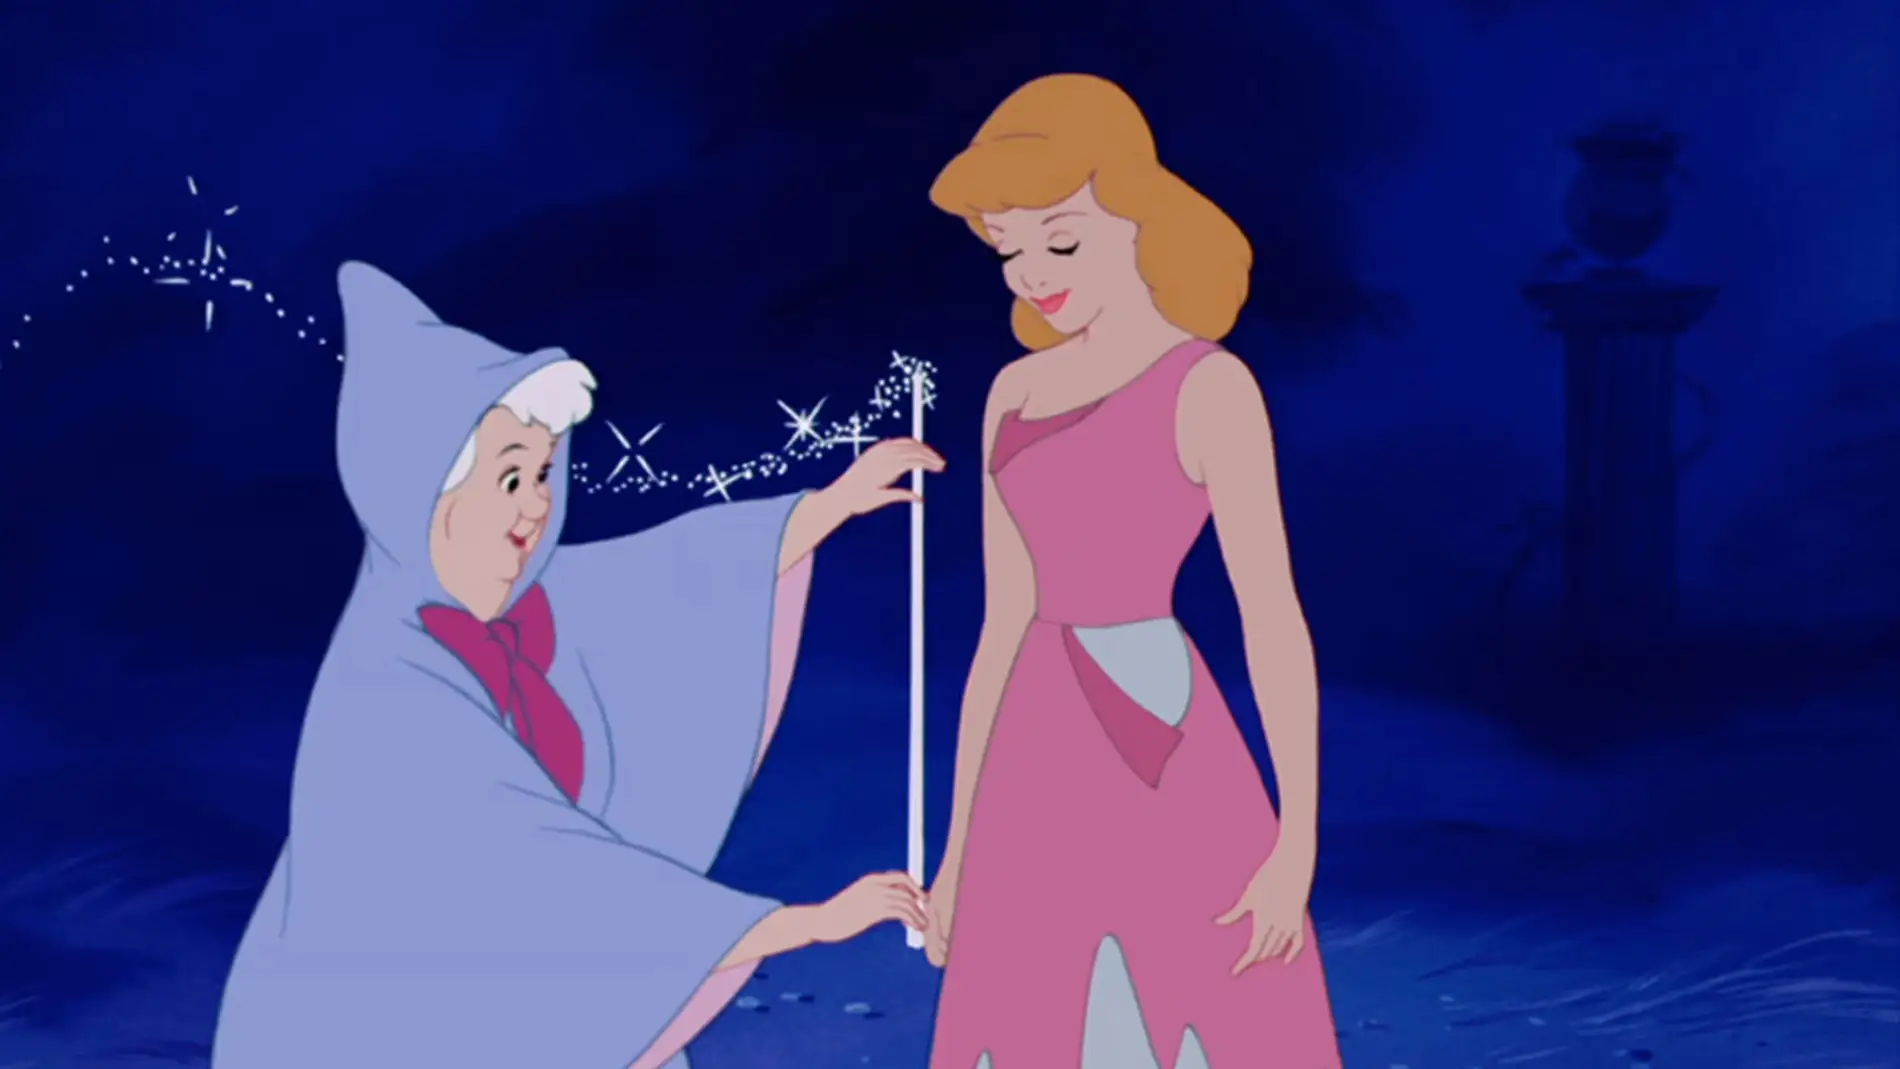 Te imaginas ser Ariel o Bella en tu boda? Disney empieza a diseñar vestidos  de novia inspirados en sus princesas